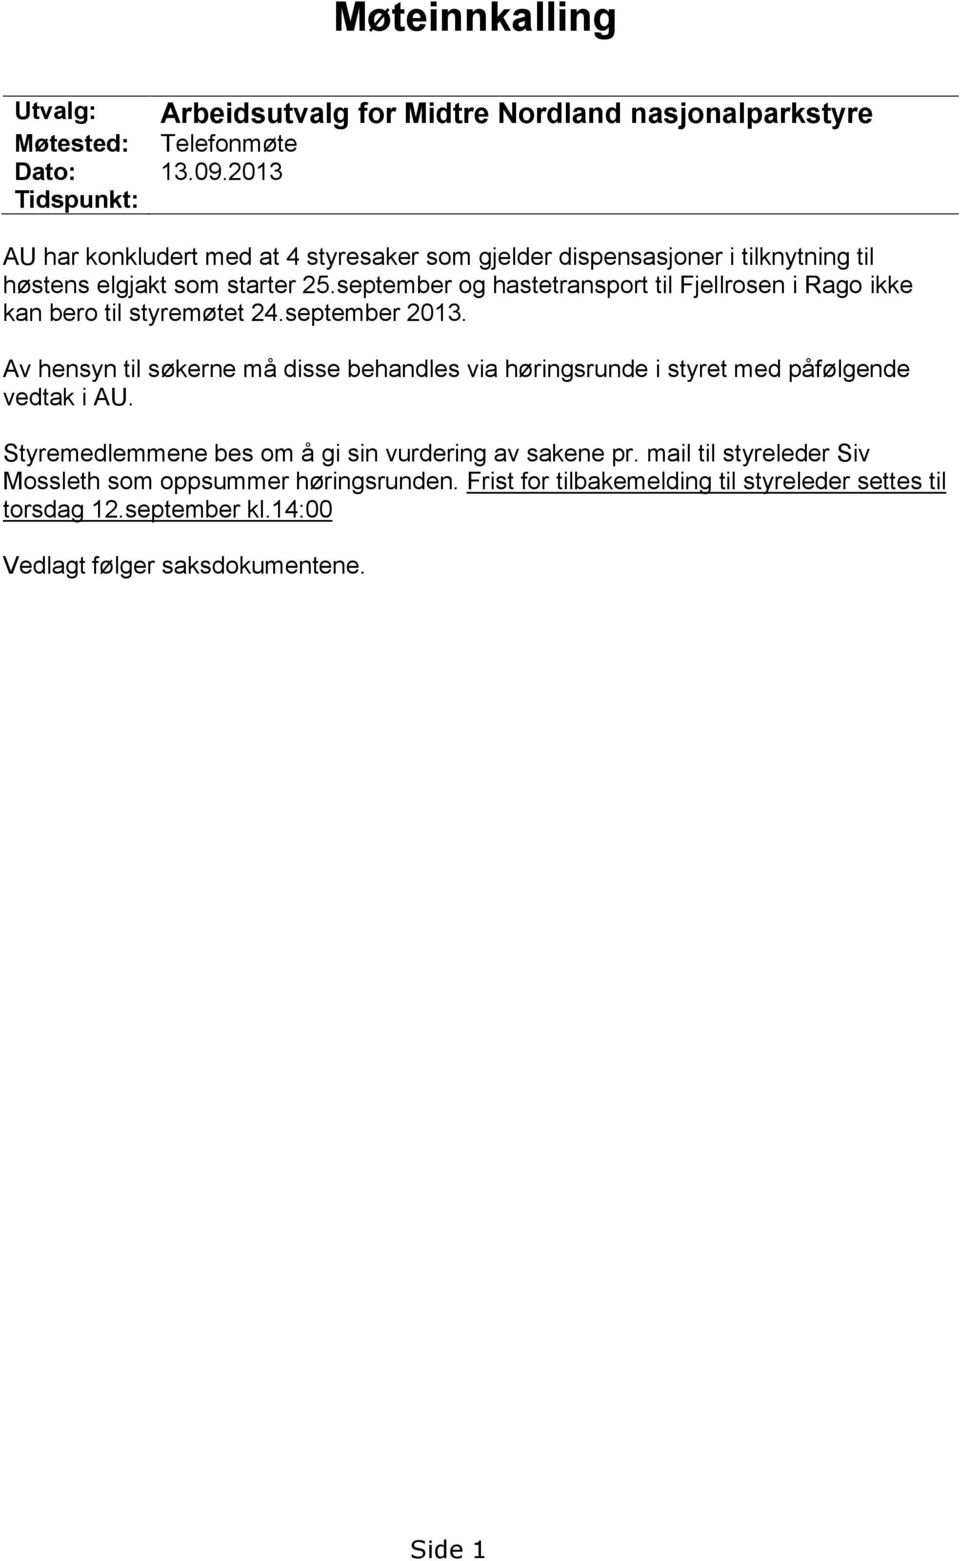 som starter 25.september og hastetransport til Fjellrosen i Rago ikke kan bero til styremøtet 24.september 2013.